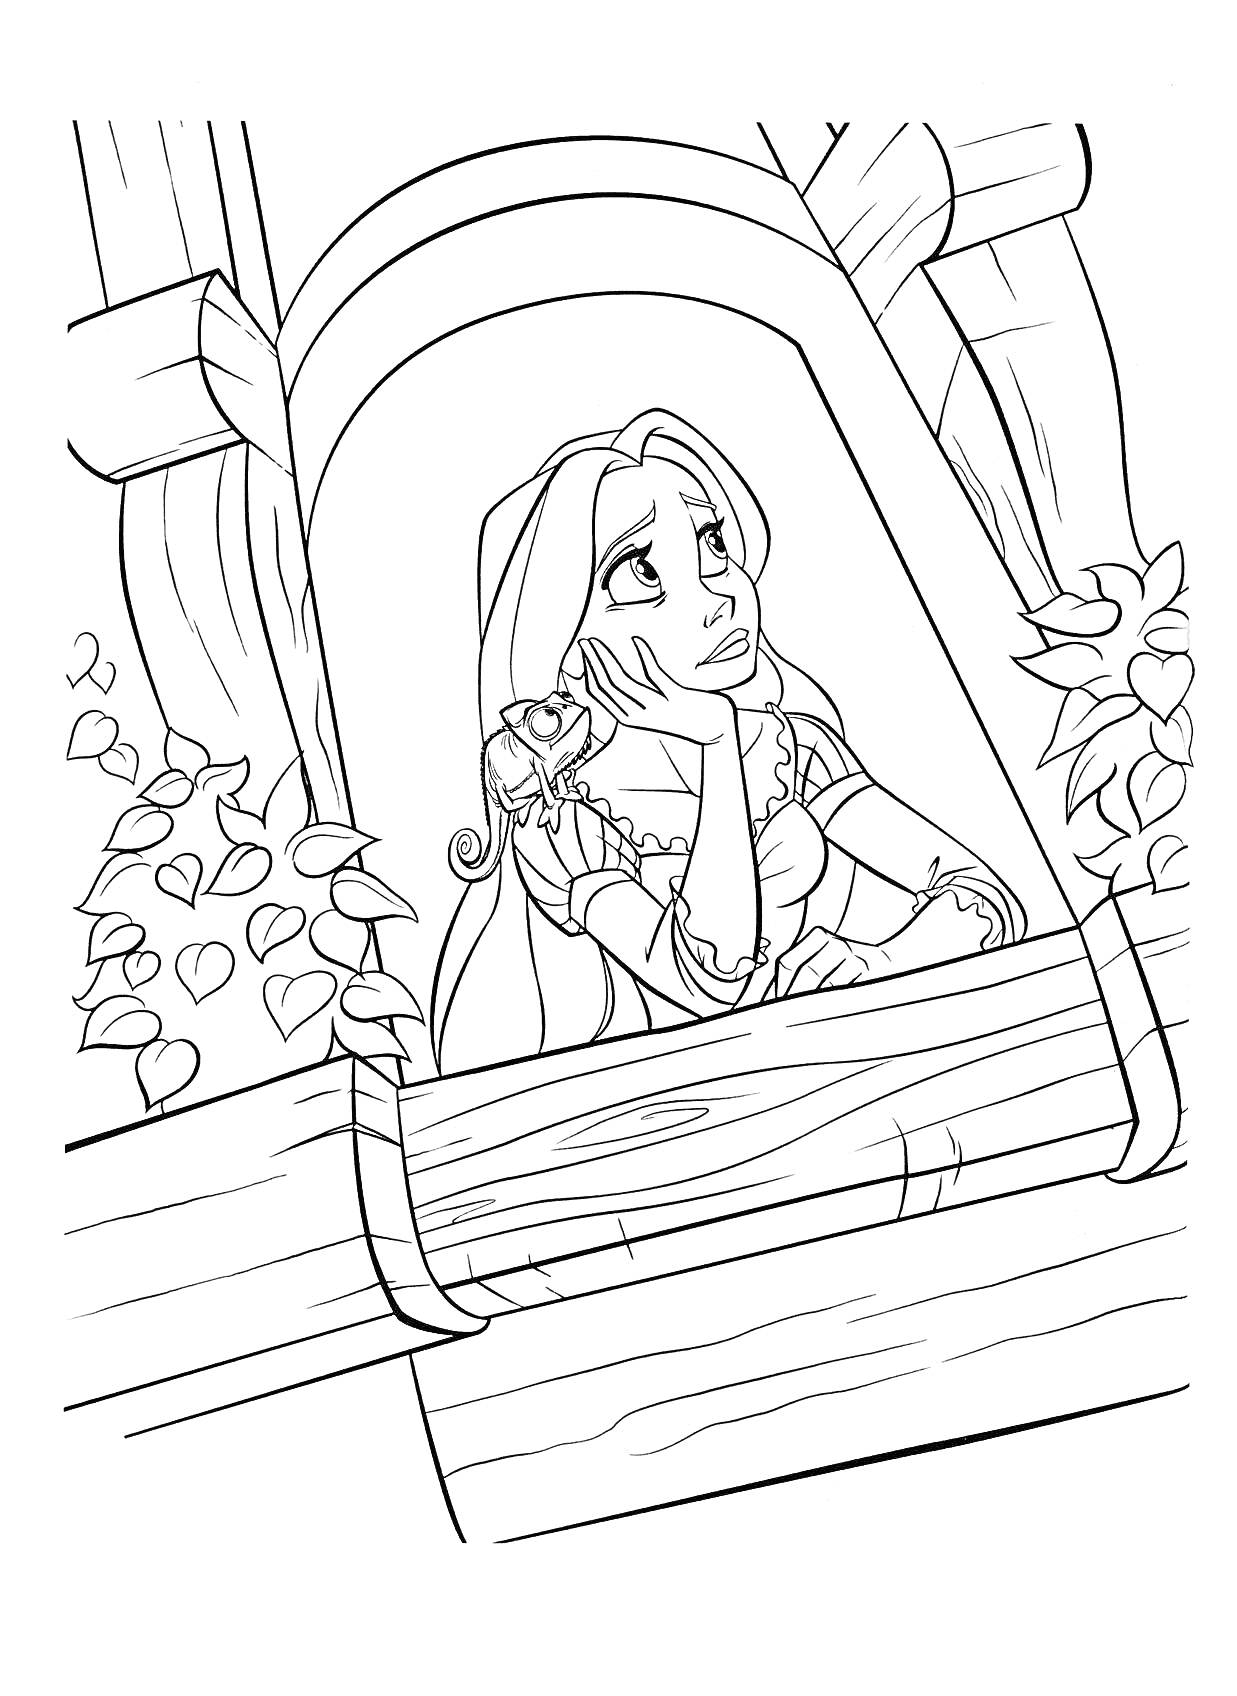 Раскраска Девочка с длинными волосами на балконе, украшенном листьями